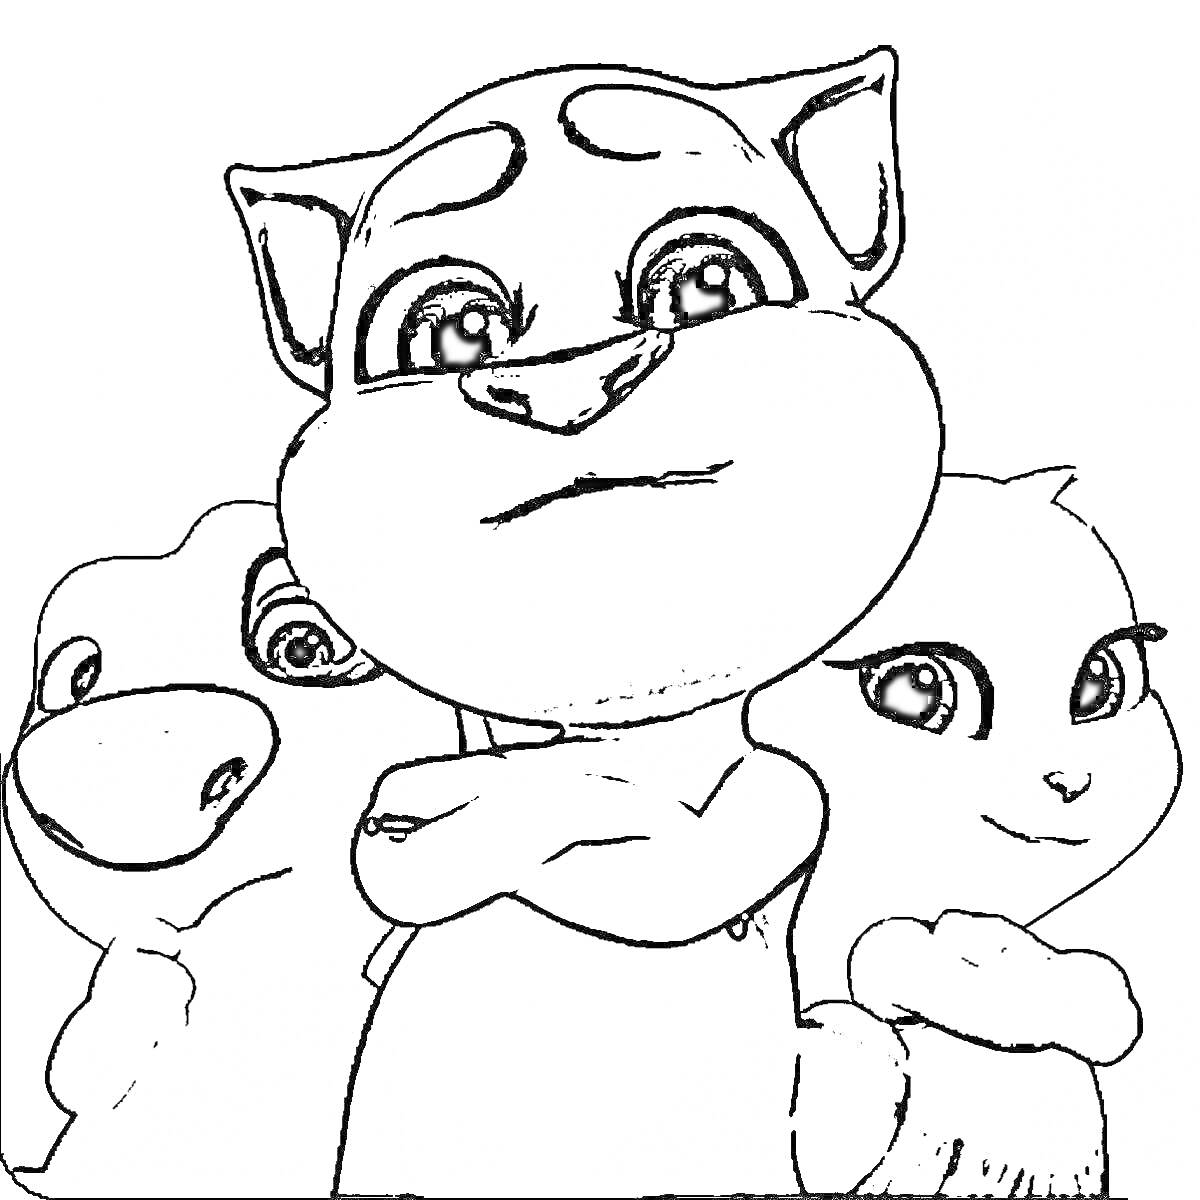 Три мультяшных персонажа: центральный с языком, левый с одним видимым глазом, правый с милой улыбкой